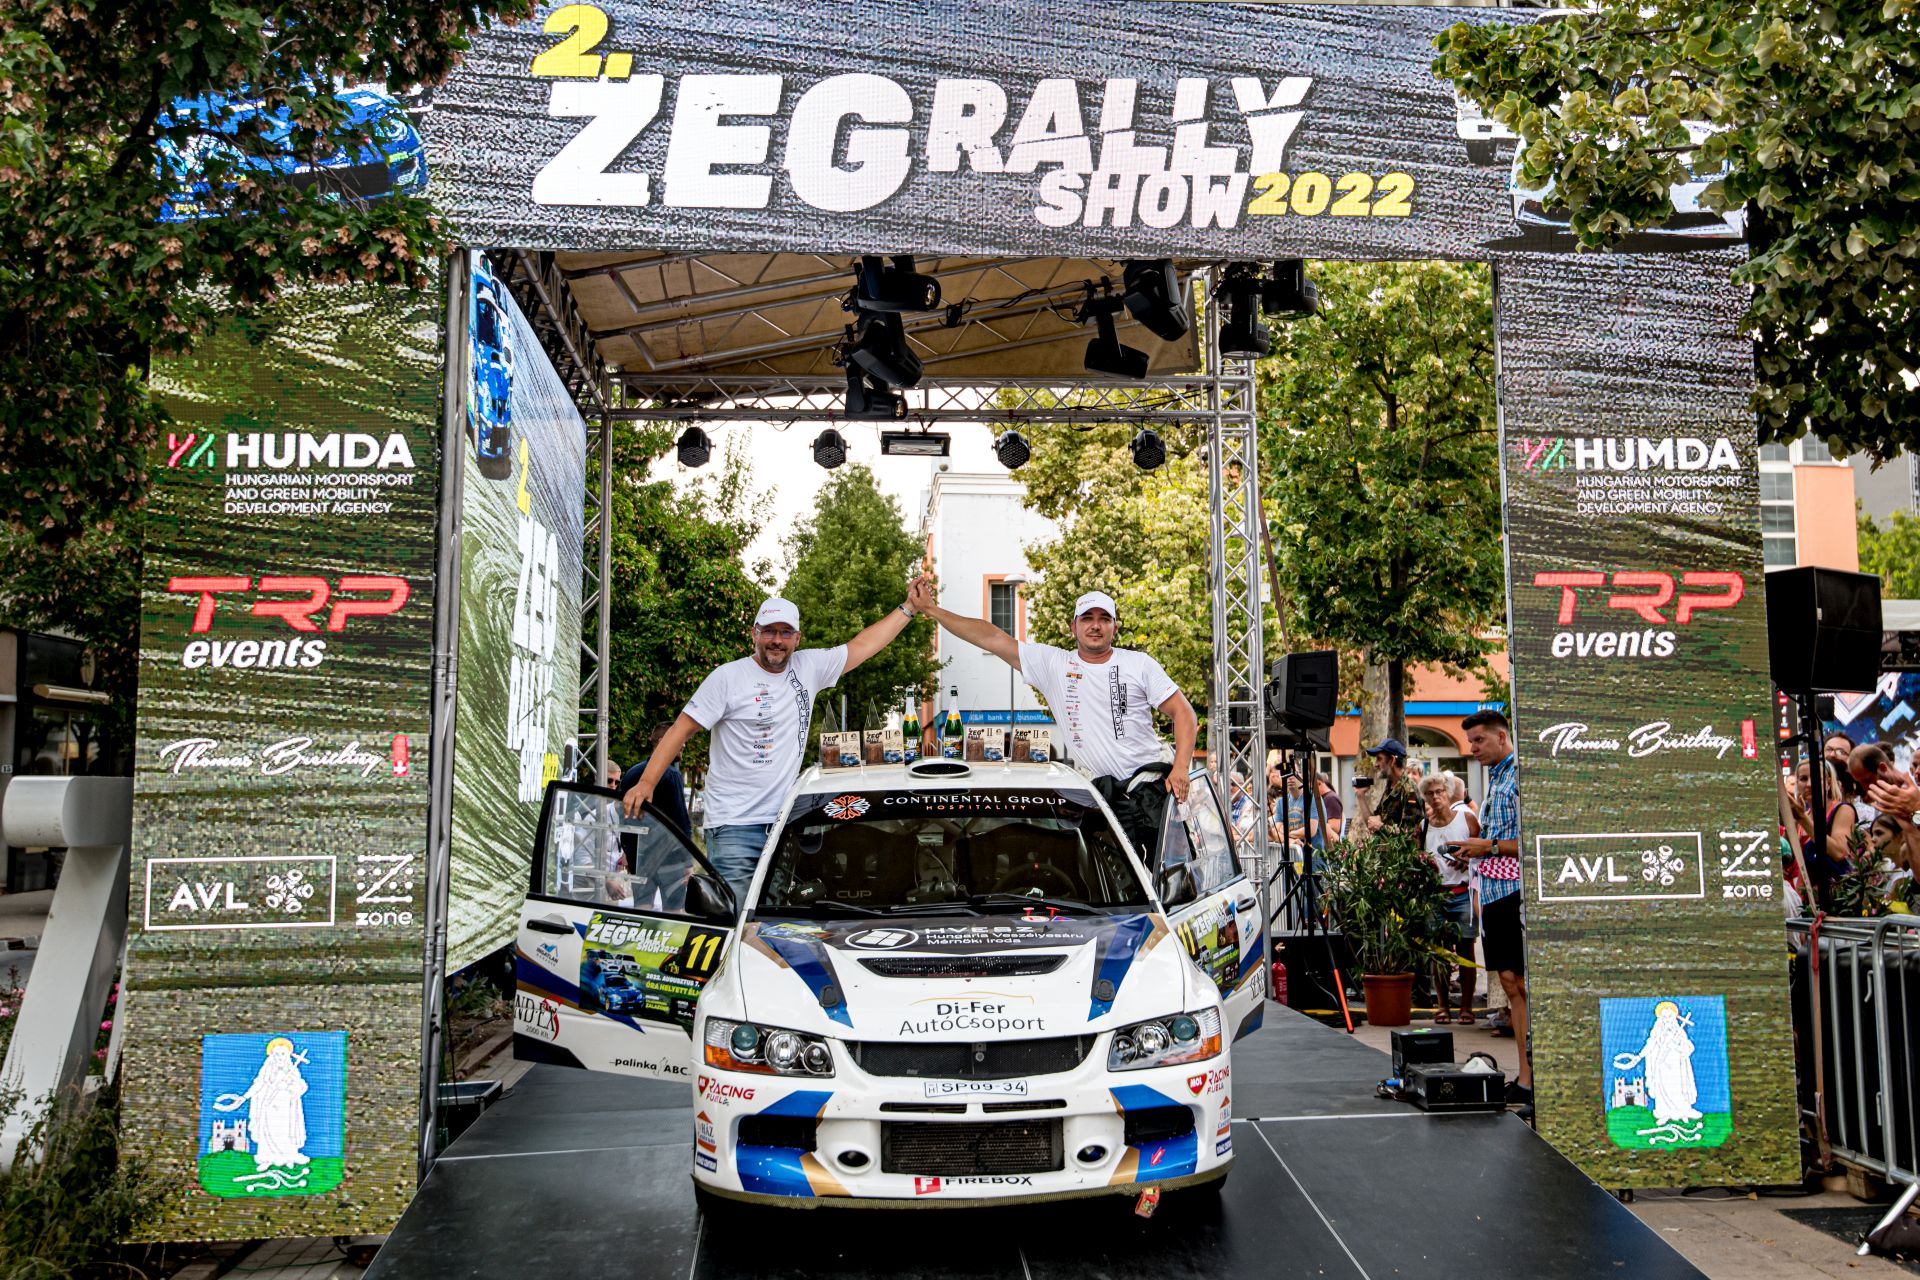 ZEG Rally Show